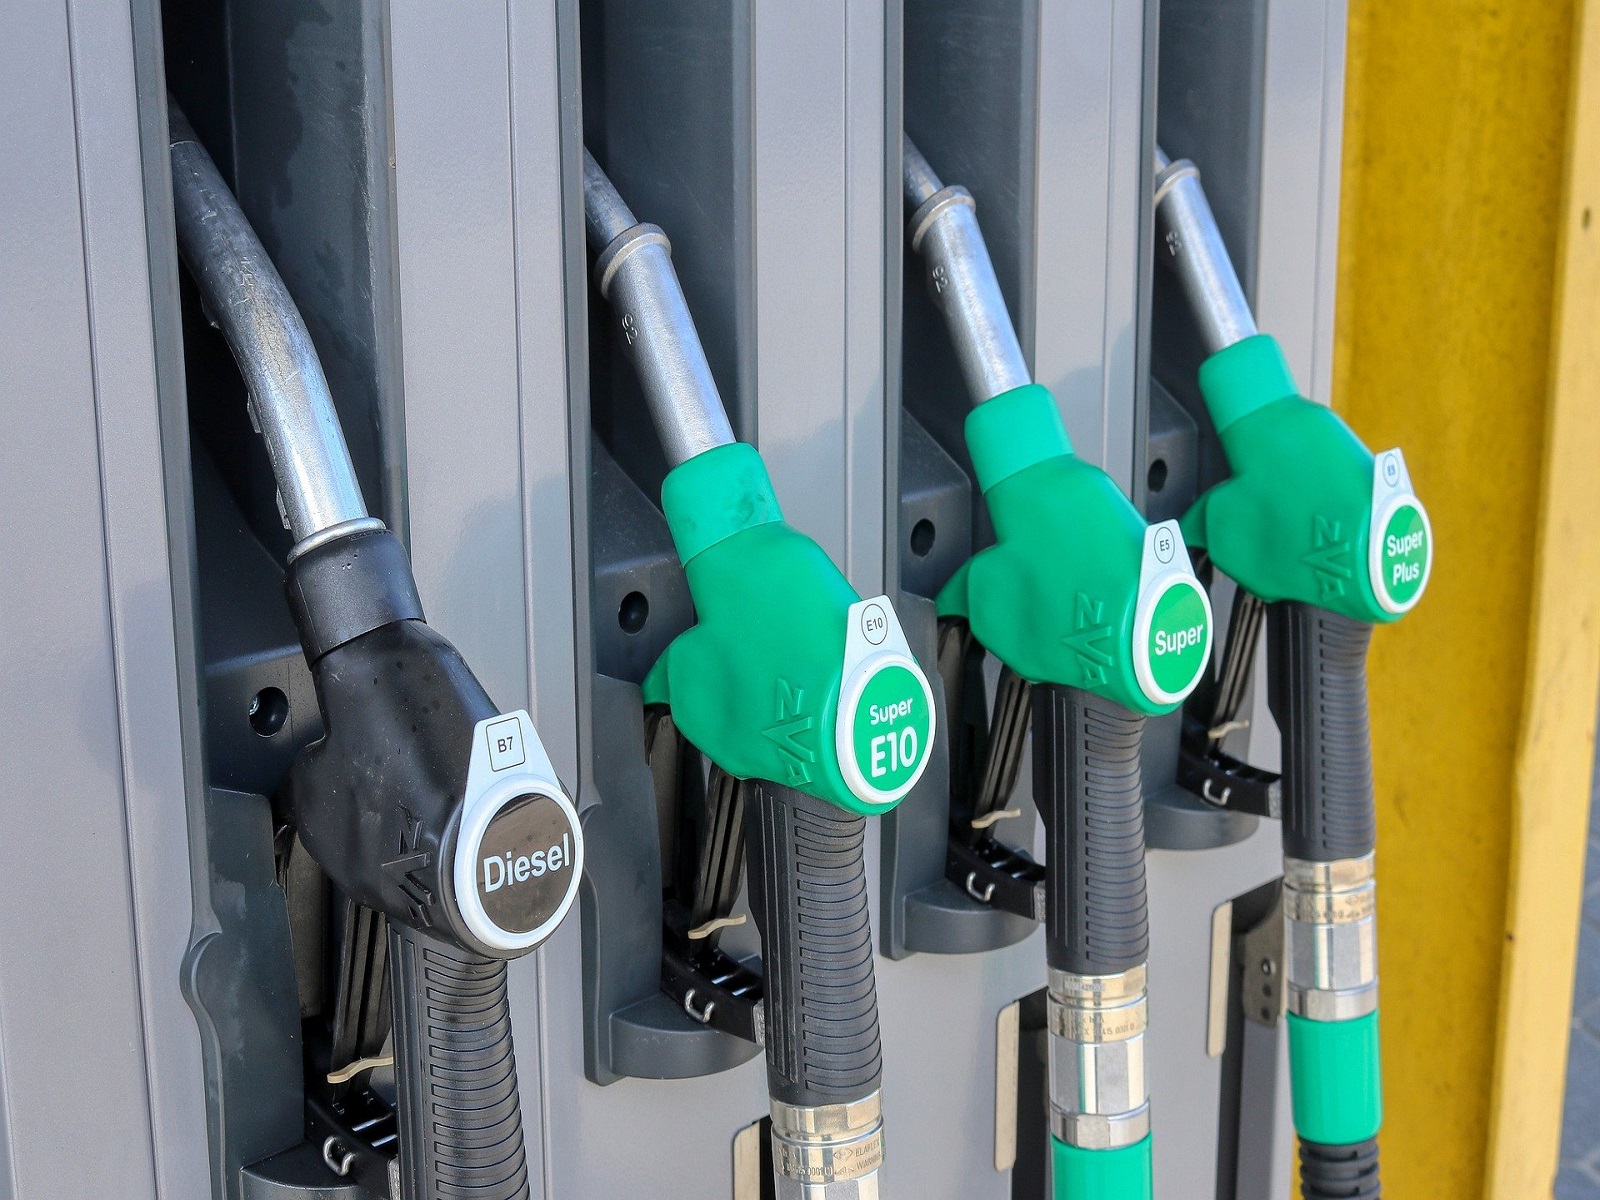 diesel-accijns-prijzen-greenport